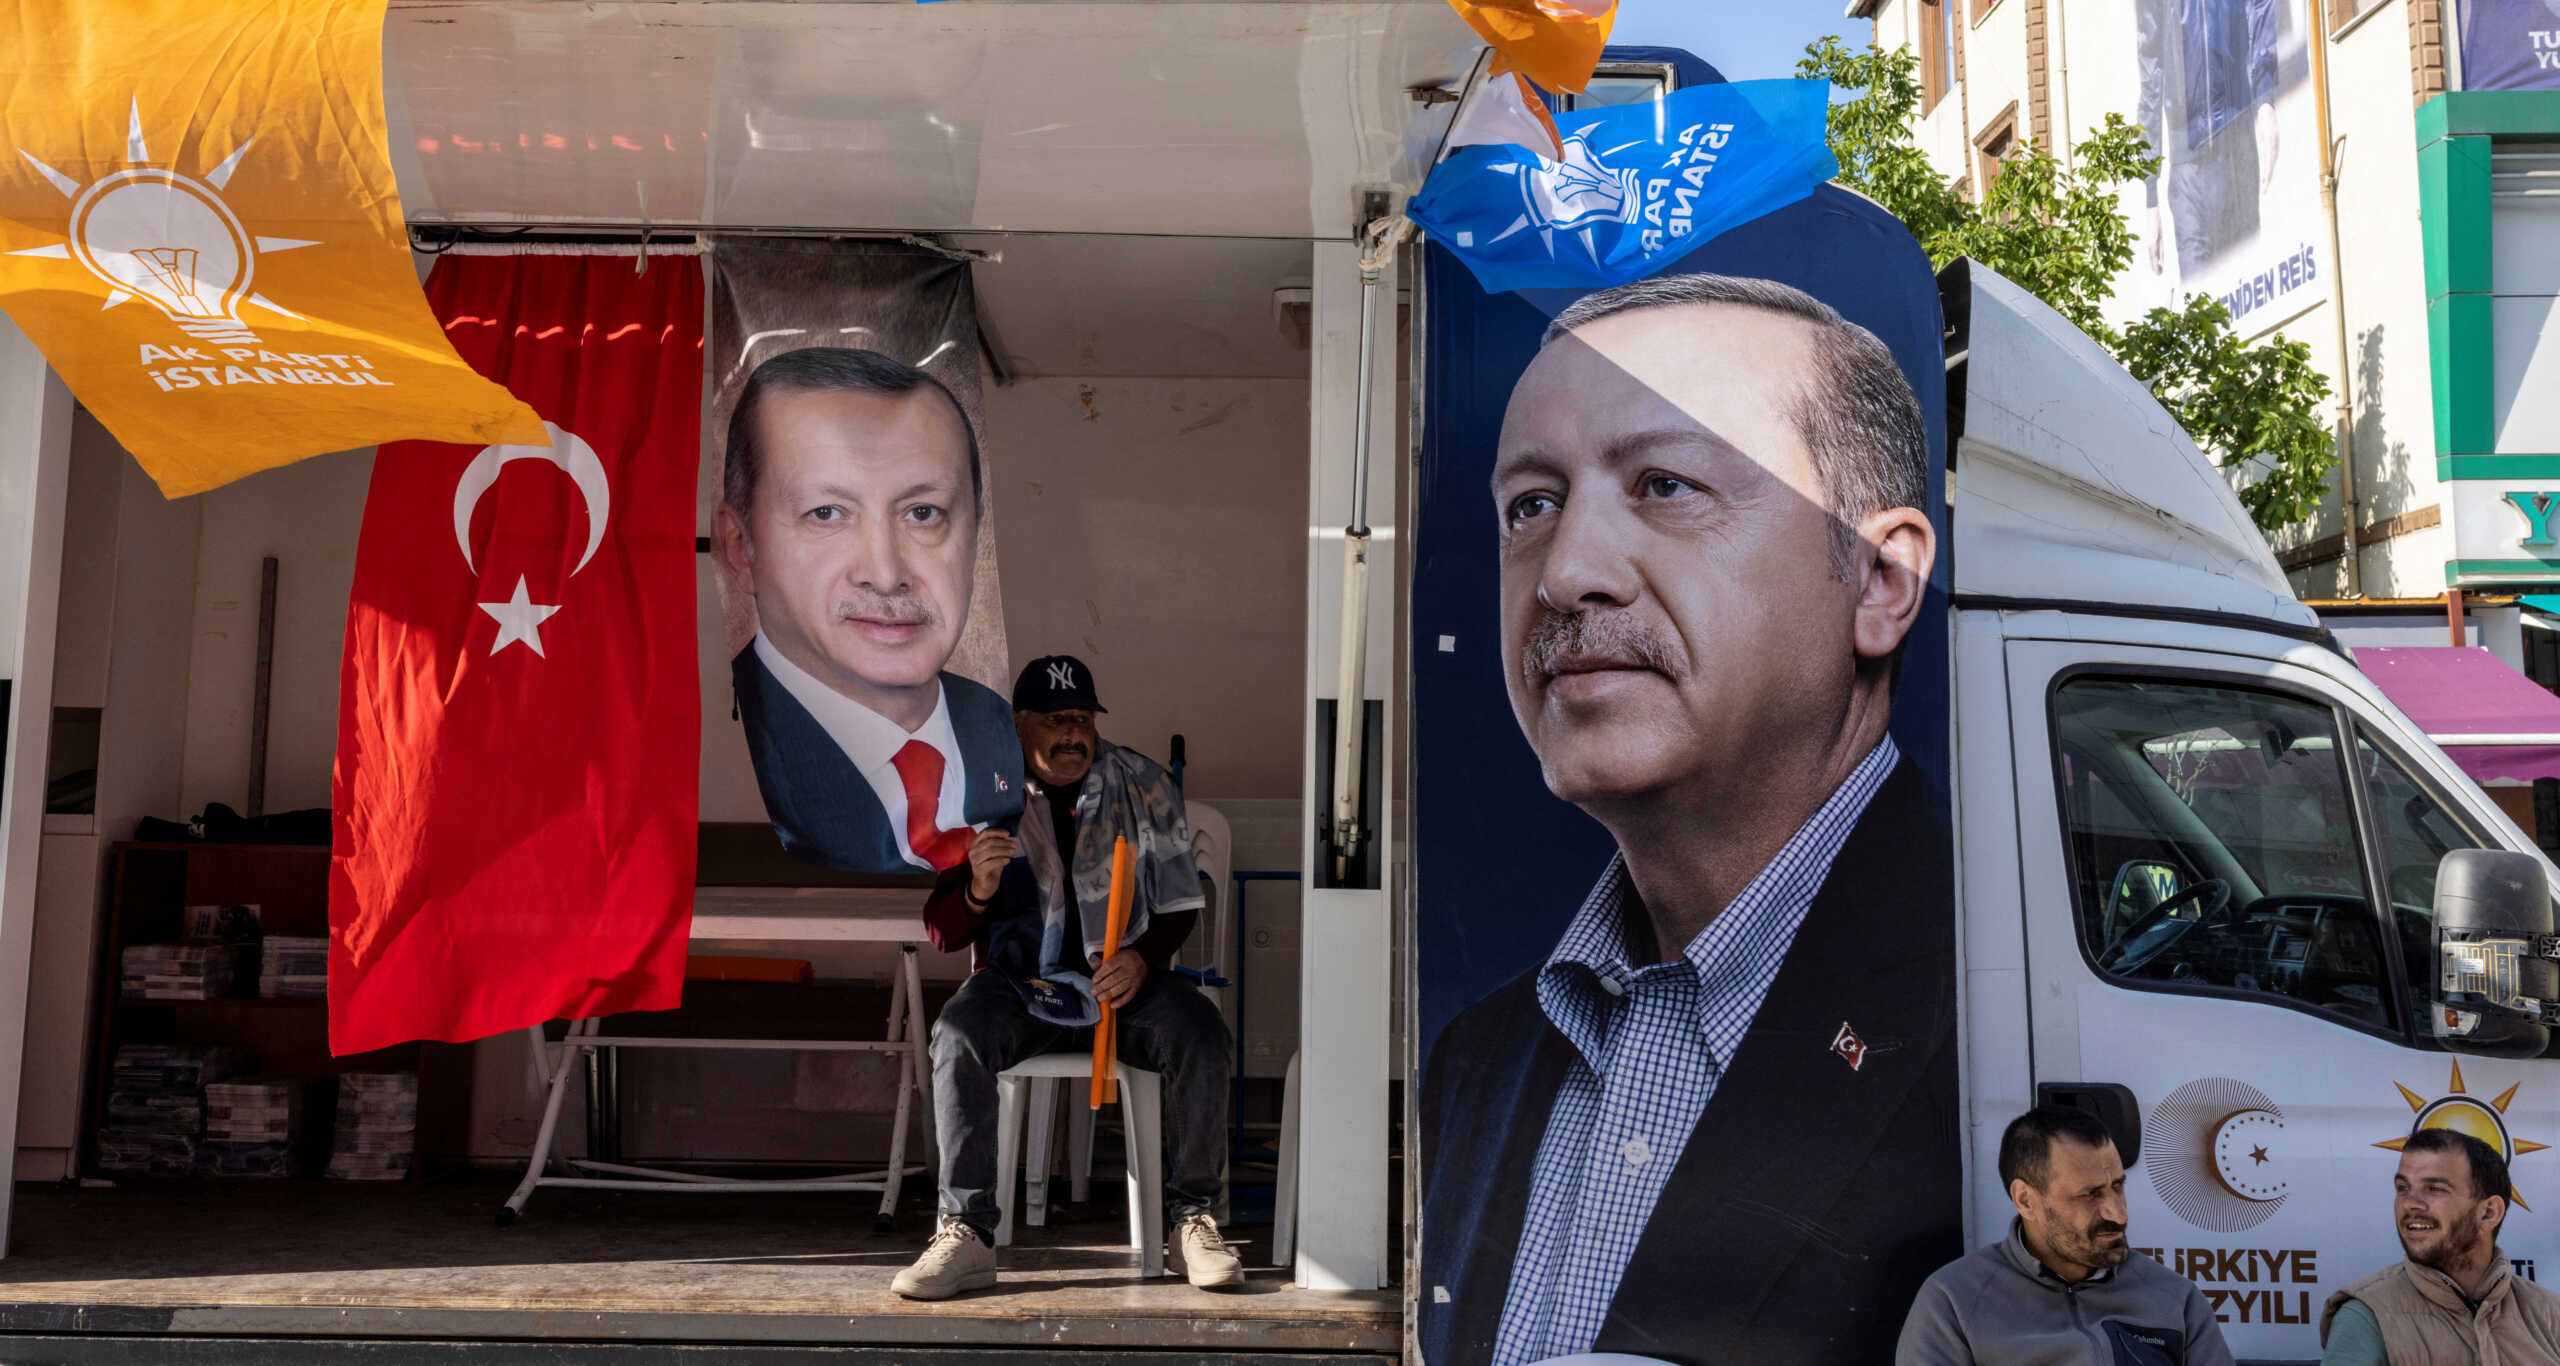 Εκλογές στην Τουρκία: Νέο βίντεο ύμνος για τον Ερντογάν – «Η ελπίδα για όλη την ανθρωπότητα»